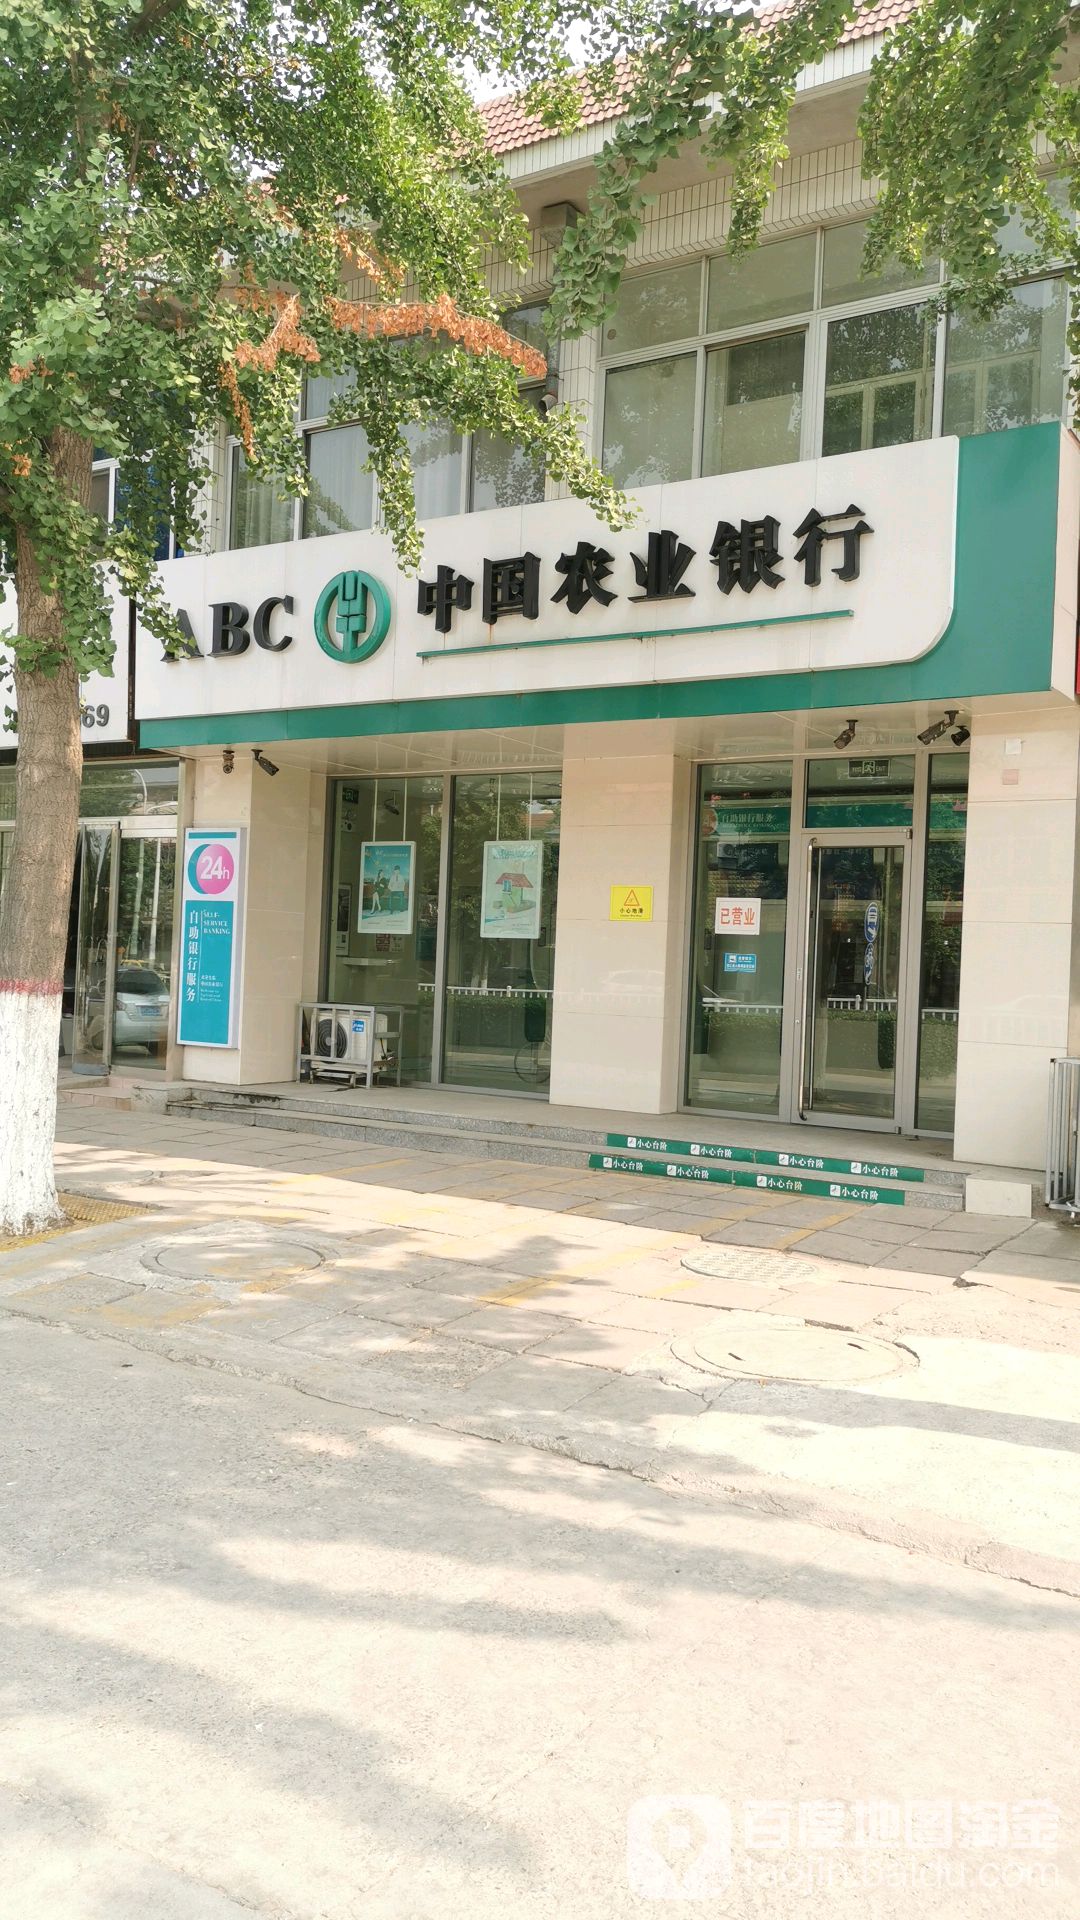 中國農業銀行24小時自助銀行(天馬大街)